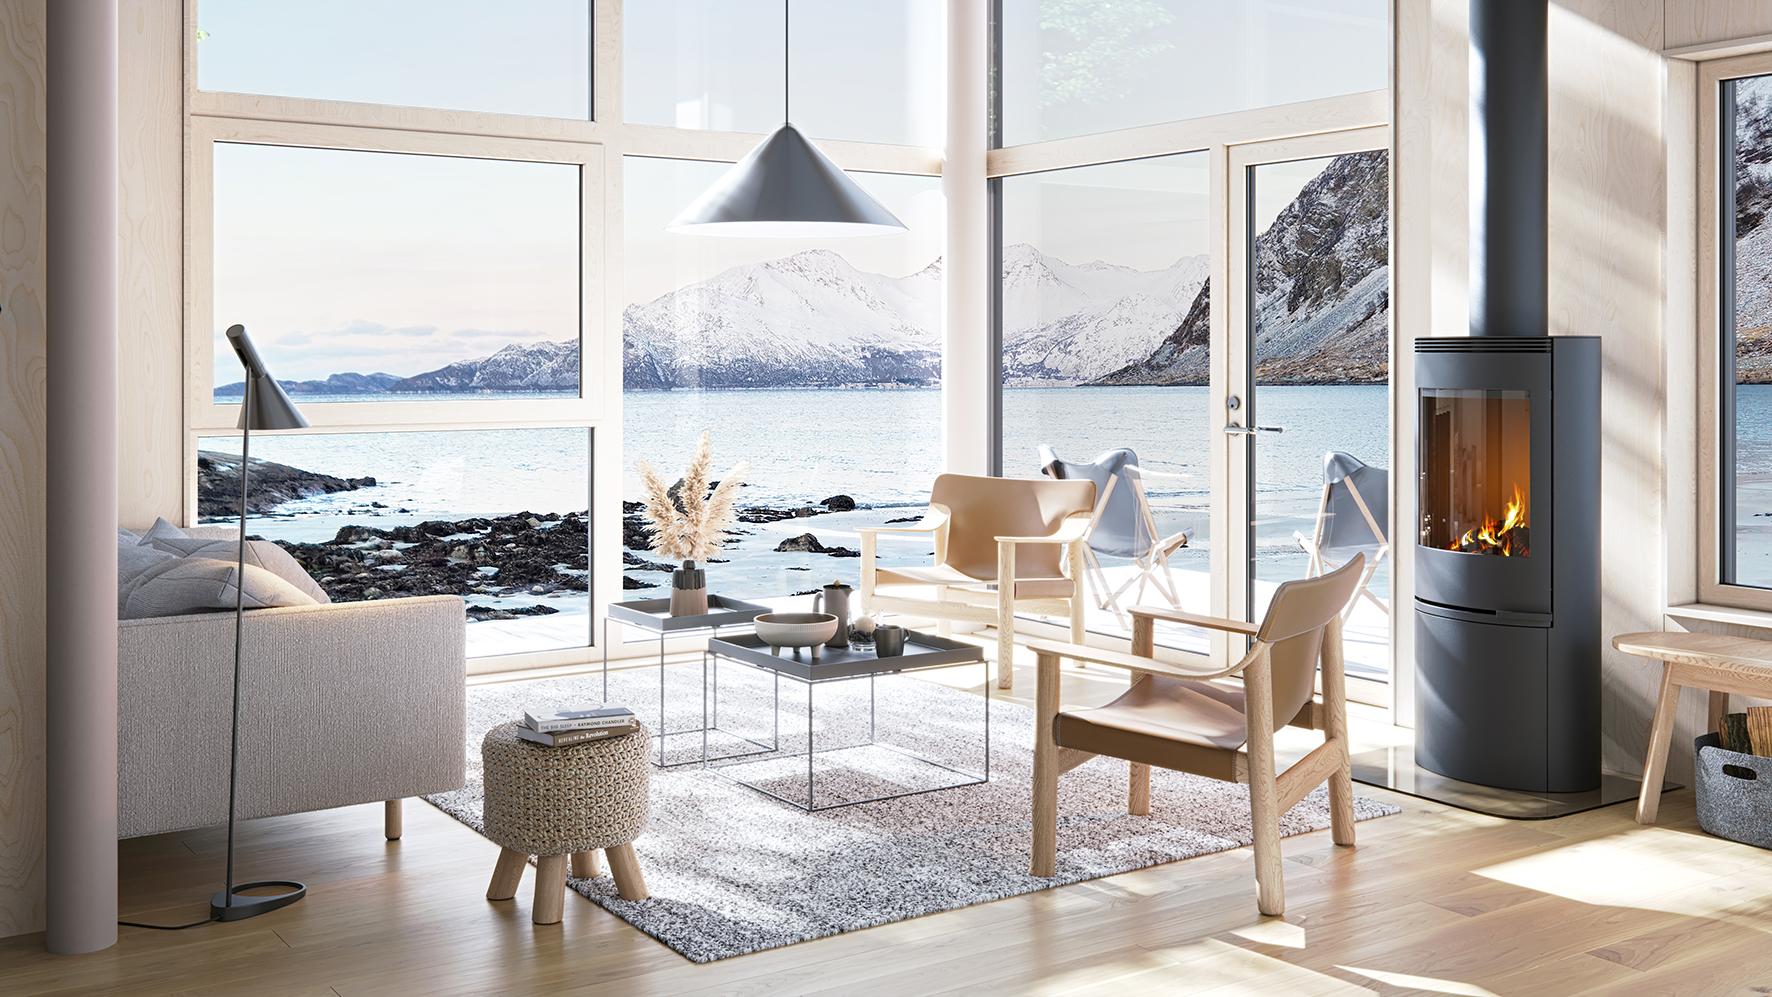 Drøm deg bort i det skjønne landskapet i hyttemodellen Hamarøy.